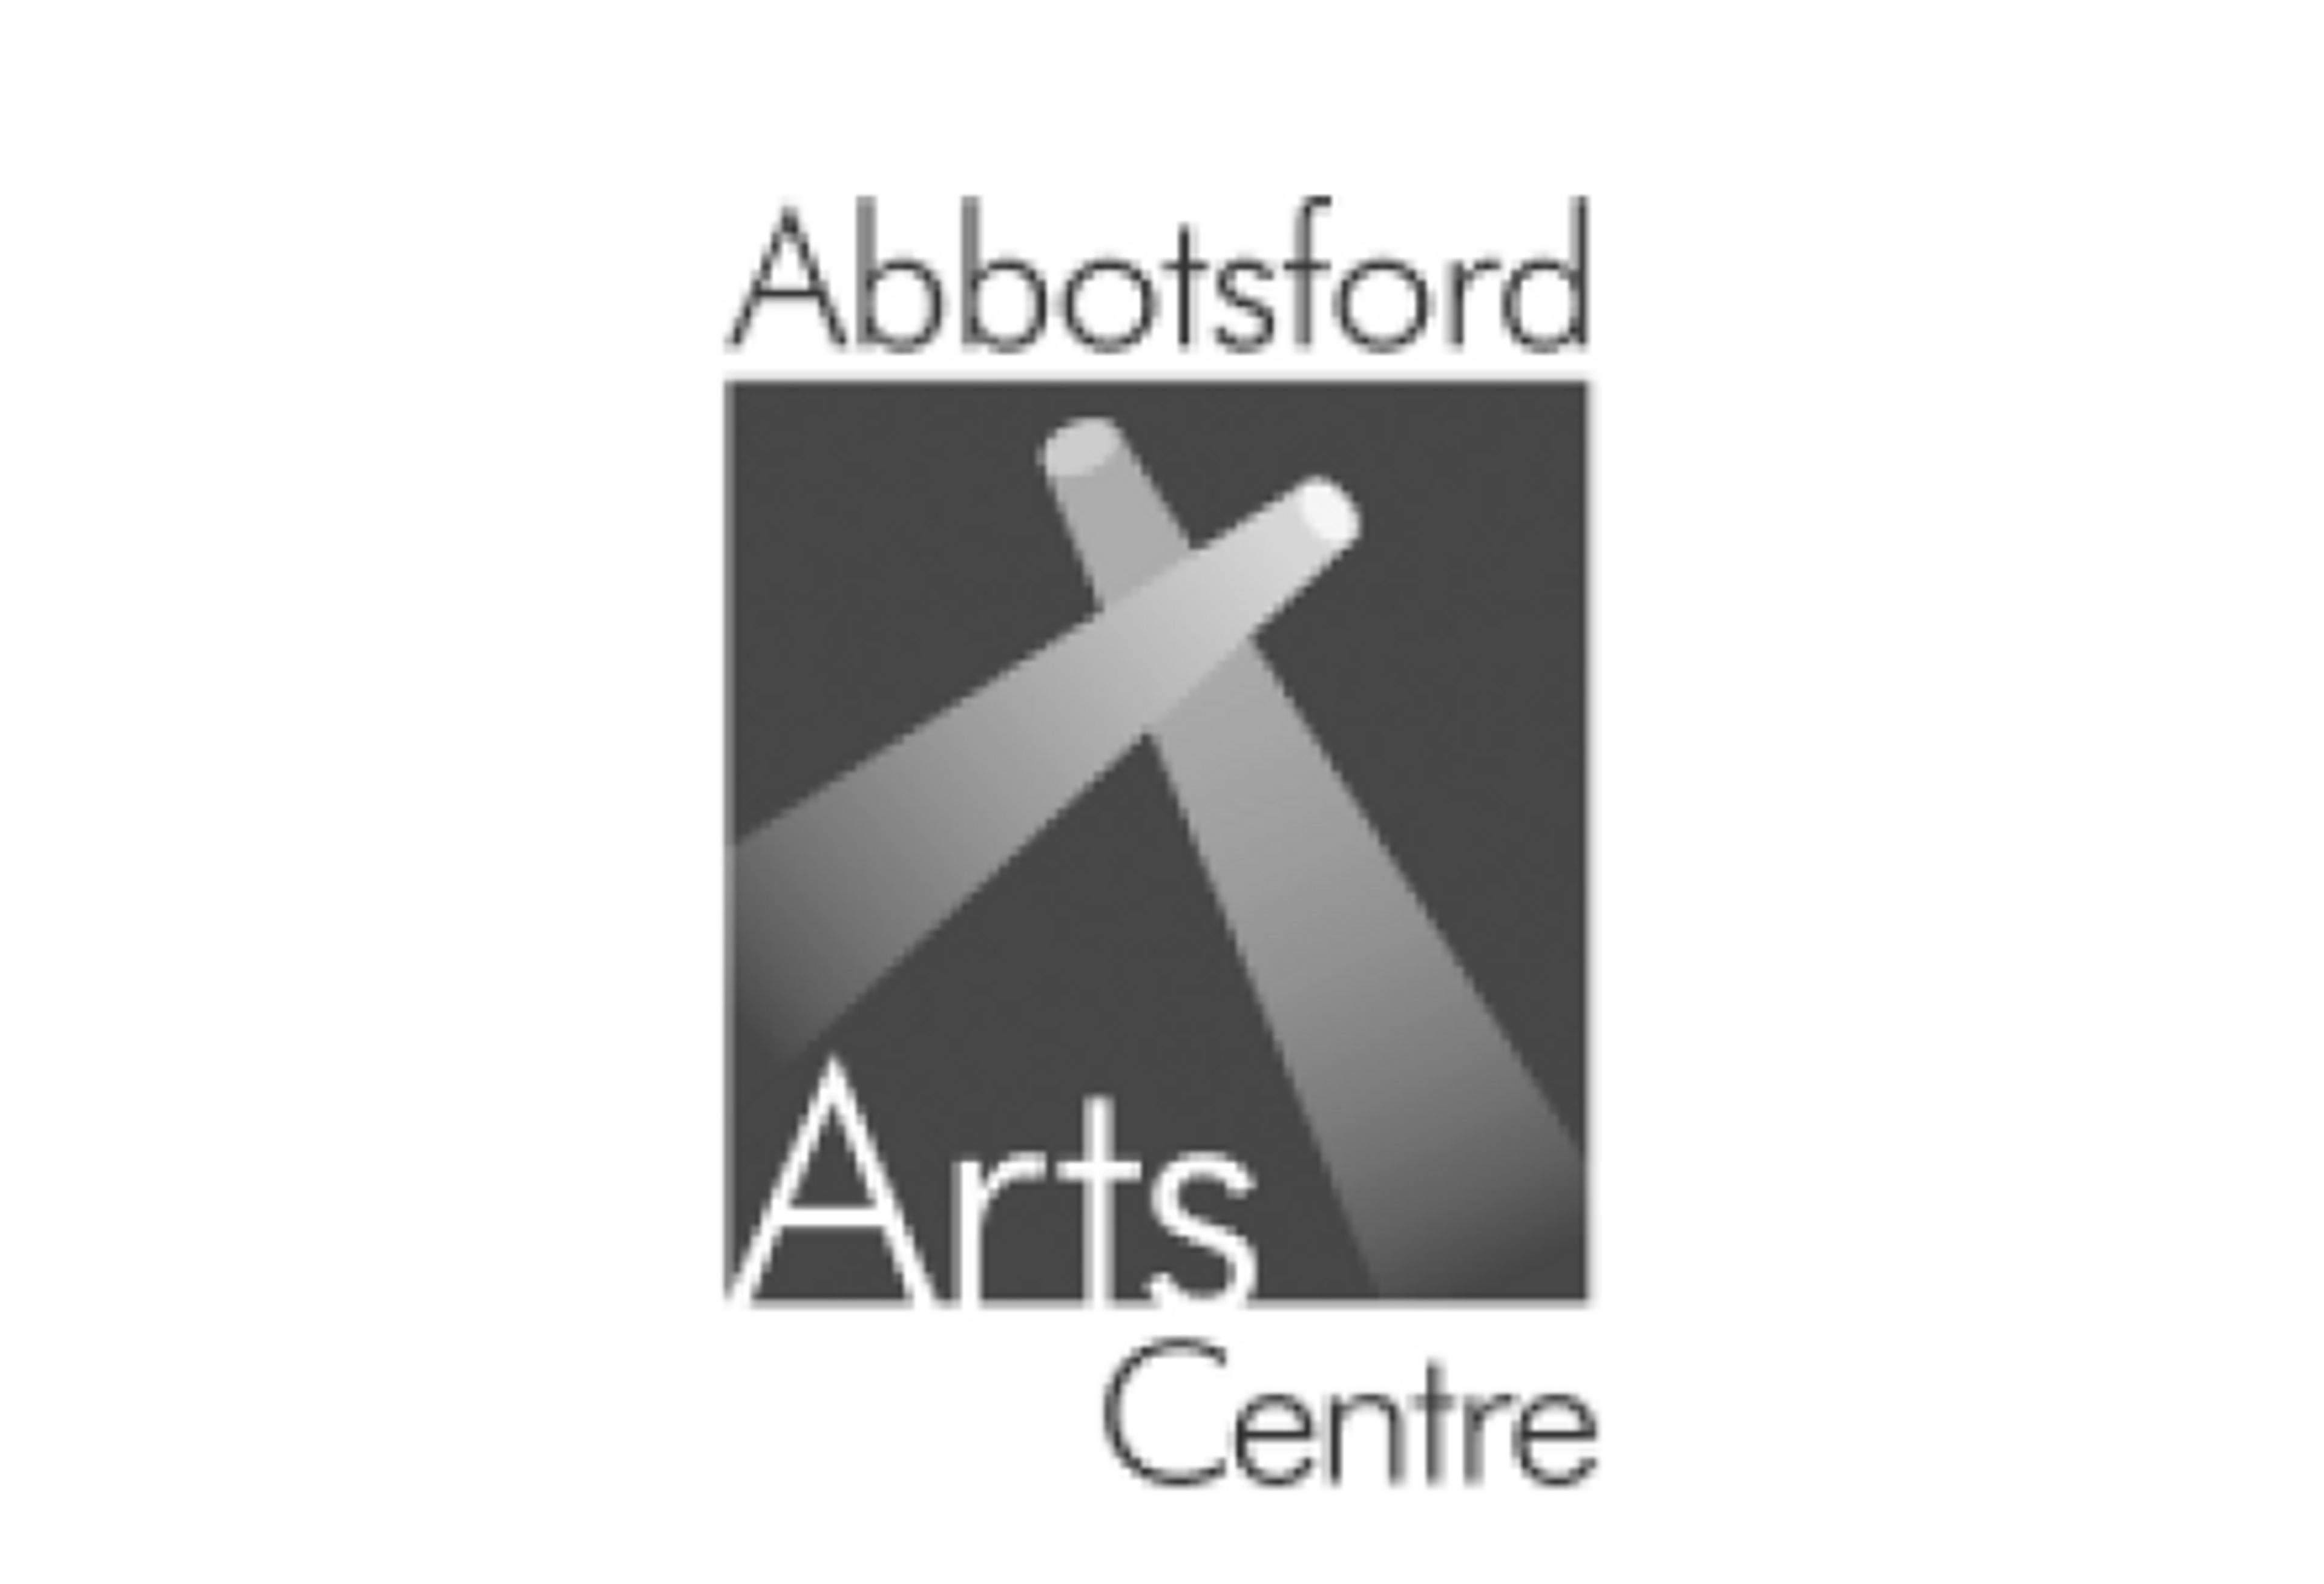 Abbotsford Arts Centre